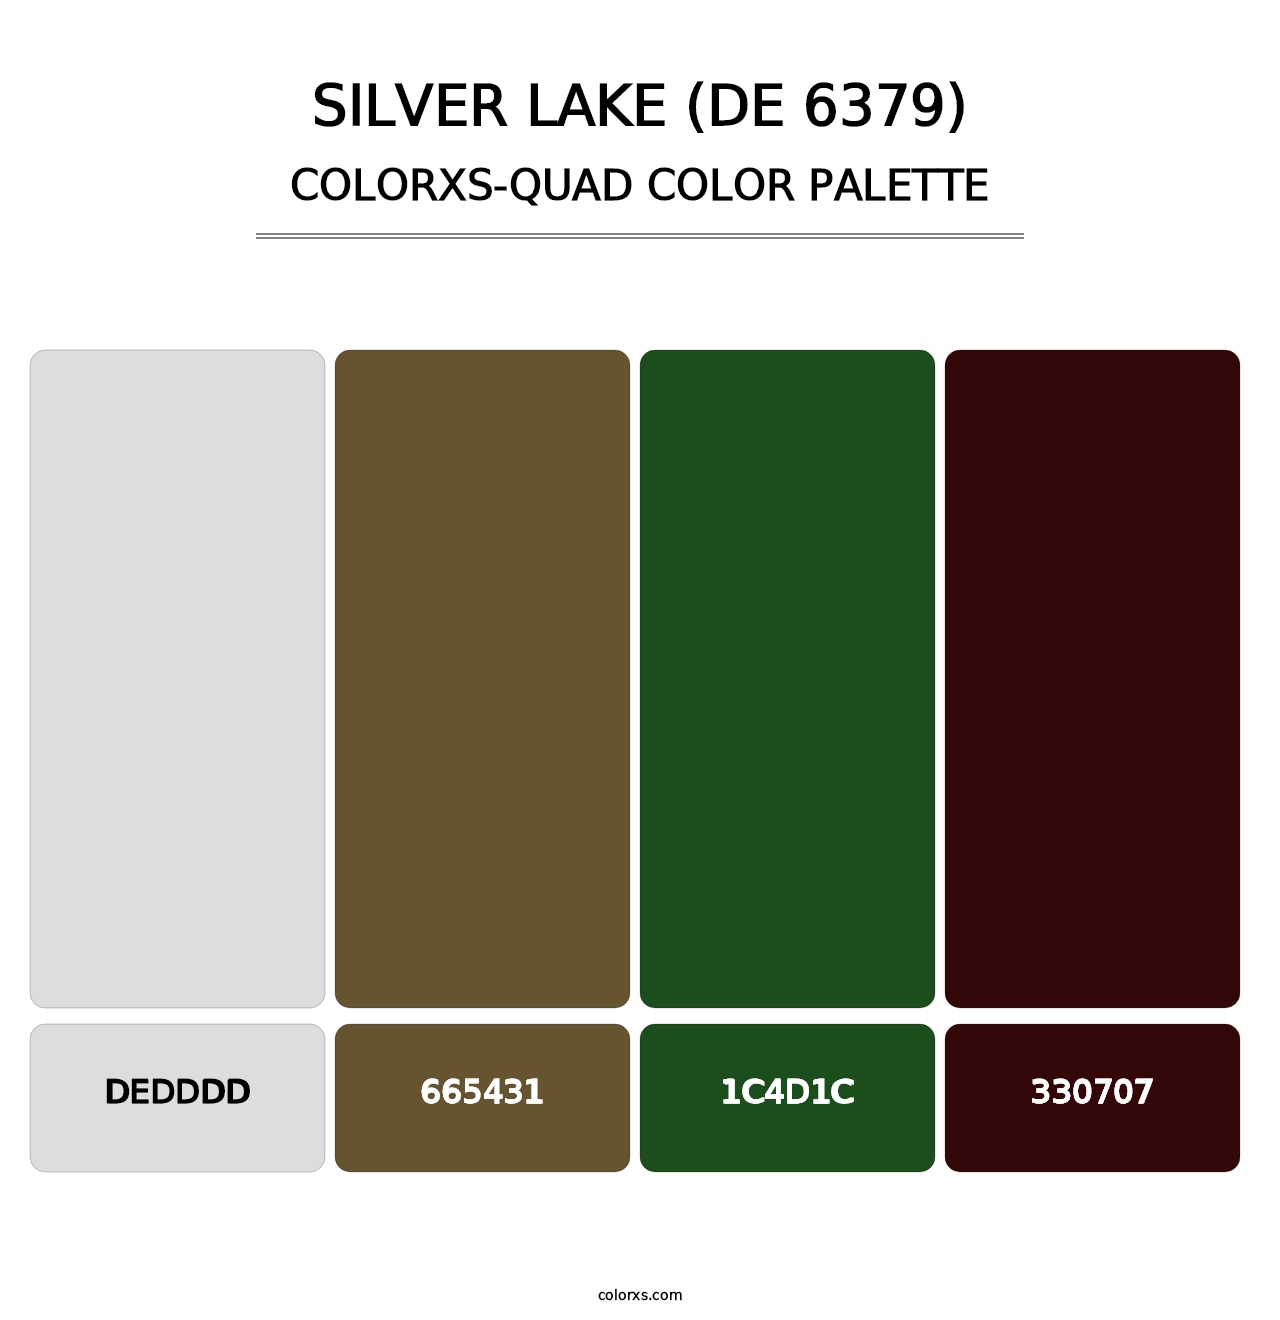 Silver Lake (DE 6379) - Colorxs Quad Palette